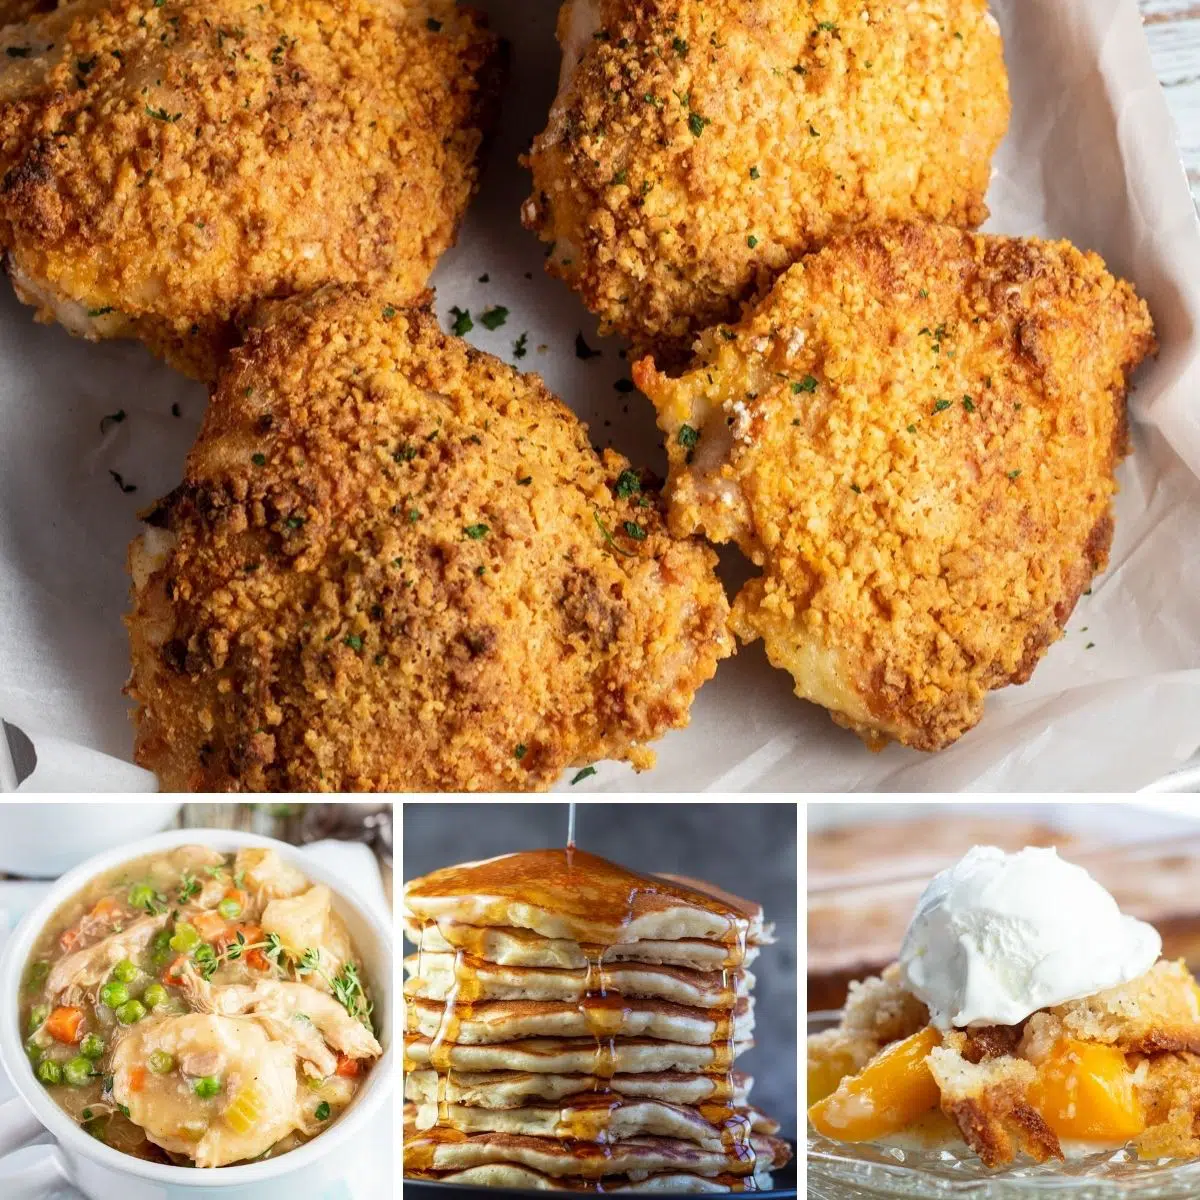 La migliore immagine collage di ricette Bisquick con 4 riquadri.